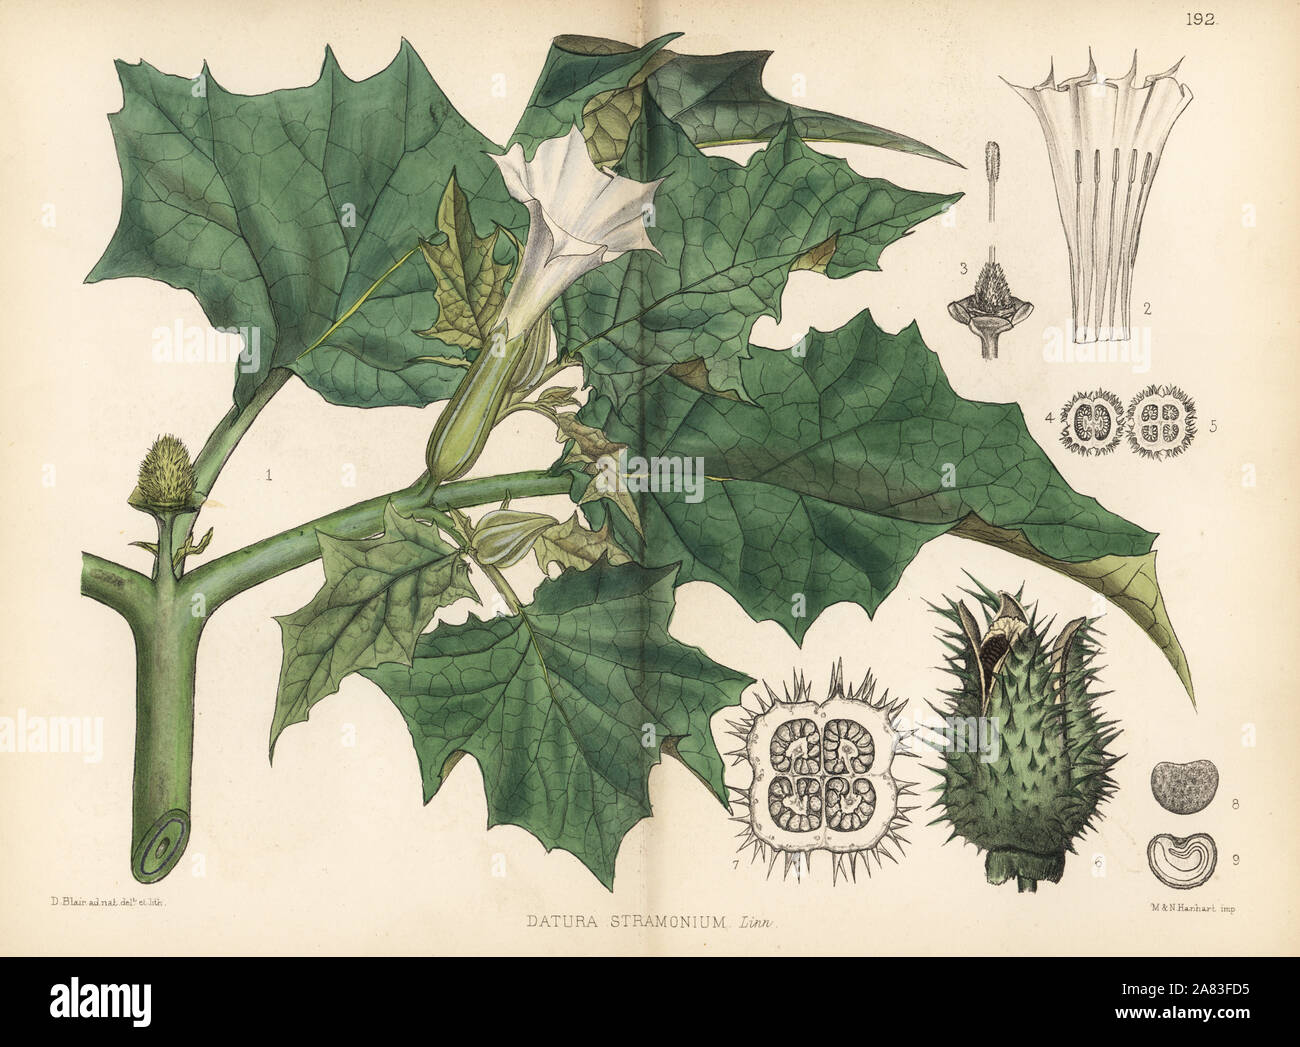 Thorn apple, Datura stramonium. Litografia Handcolored da Hanhart dopo una illustrazione botanica da David Blair da Robert Bentley e Henry Trimen di piante medicinali, Londra, 1880. Foto Stock